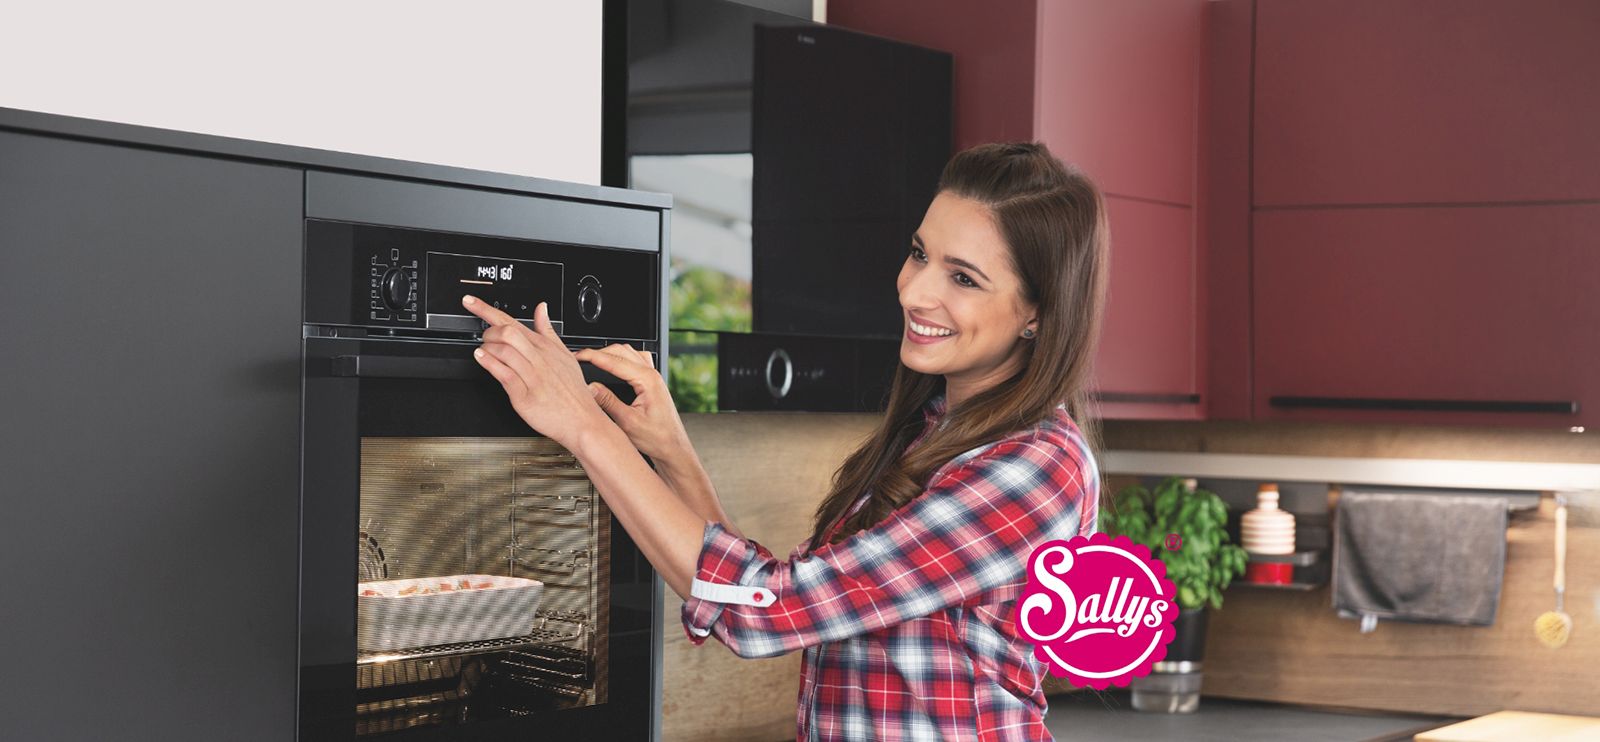 Eine lächelnde Frau benutzt einen modernen Mikrowellenherd und scheint begeistert von dem Gerät zu sein, in einer stilvollen Kücheneinstellung mit einer warmen Farbpalette.